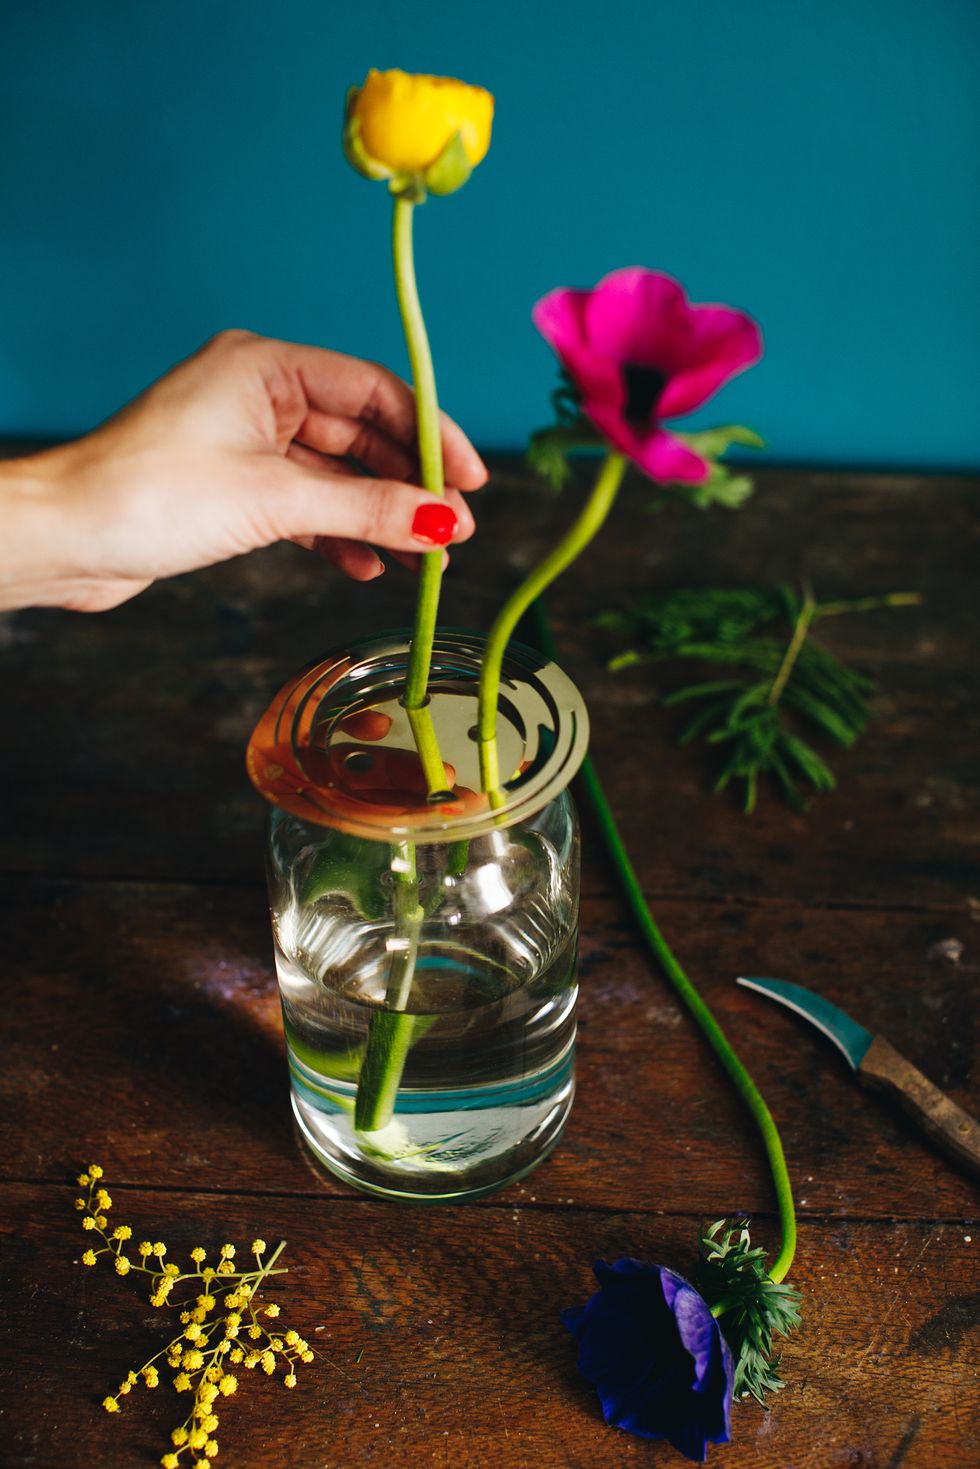 Flower, Plant, Mason jar, Plant stem, Vase, Petal, Still life photography, Tulip, Still life, Flowering plant, 